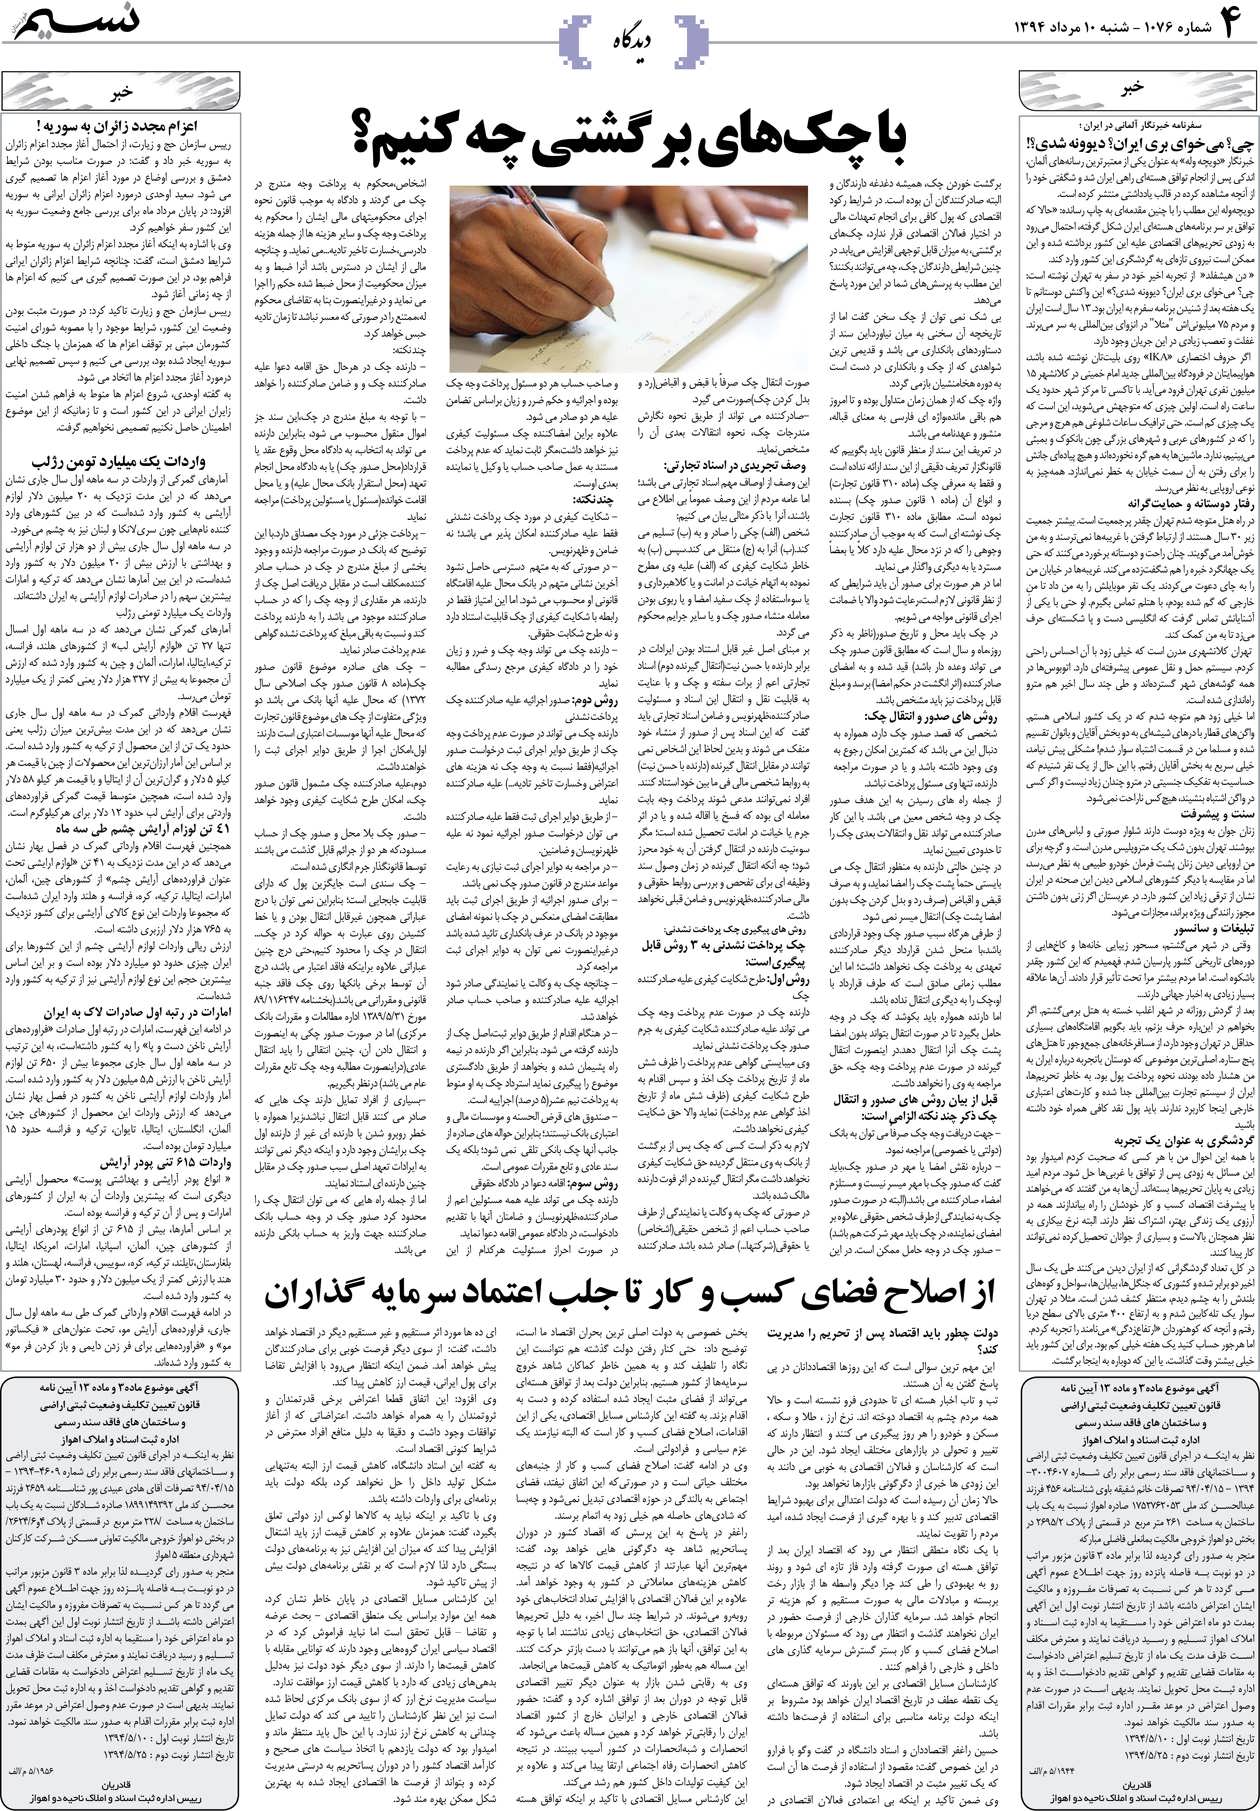 صفحه دیدگاه روزنامه نسیم شماره 1076